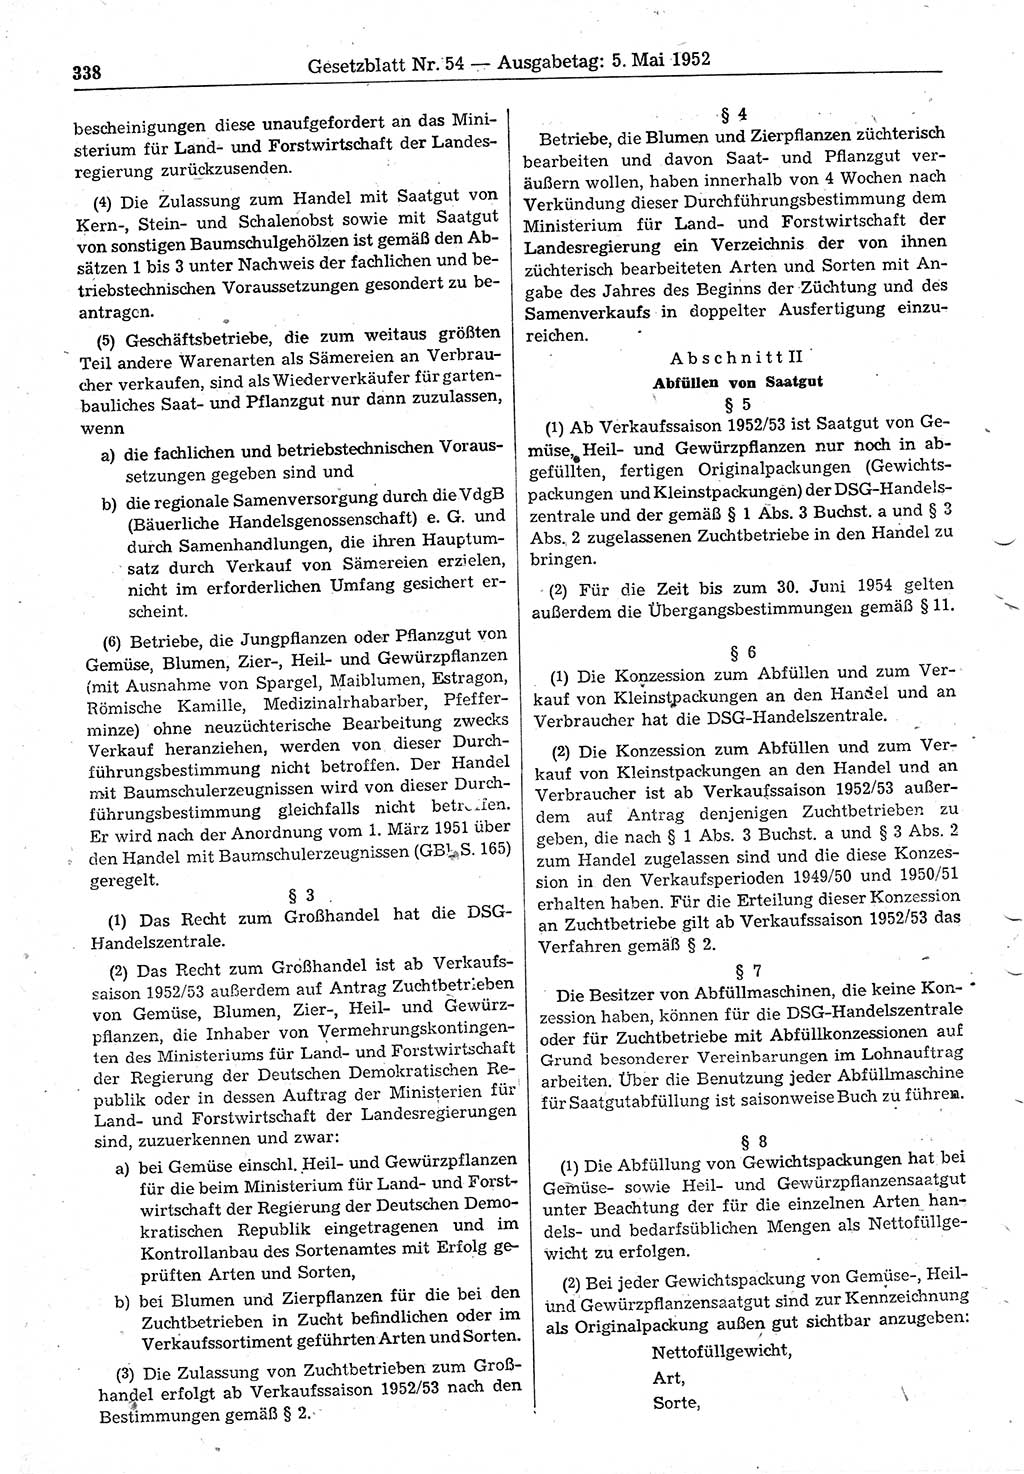 Gesetzblatt (GBl.) der Deutschen Demokratischen Republik (DDR) 1952, Seite 338 (GBl. DDR 1952, S. 338)